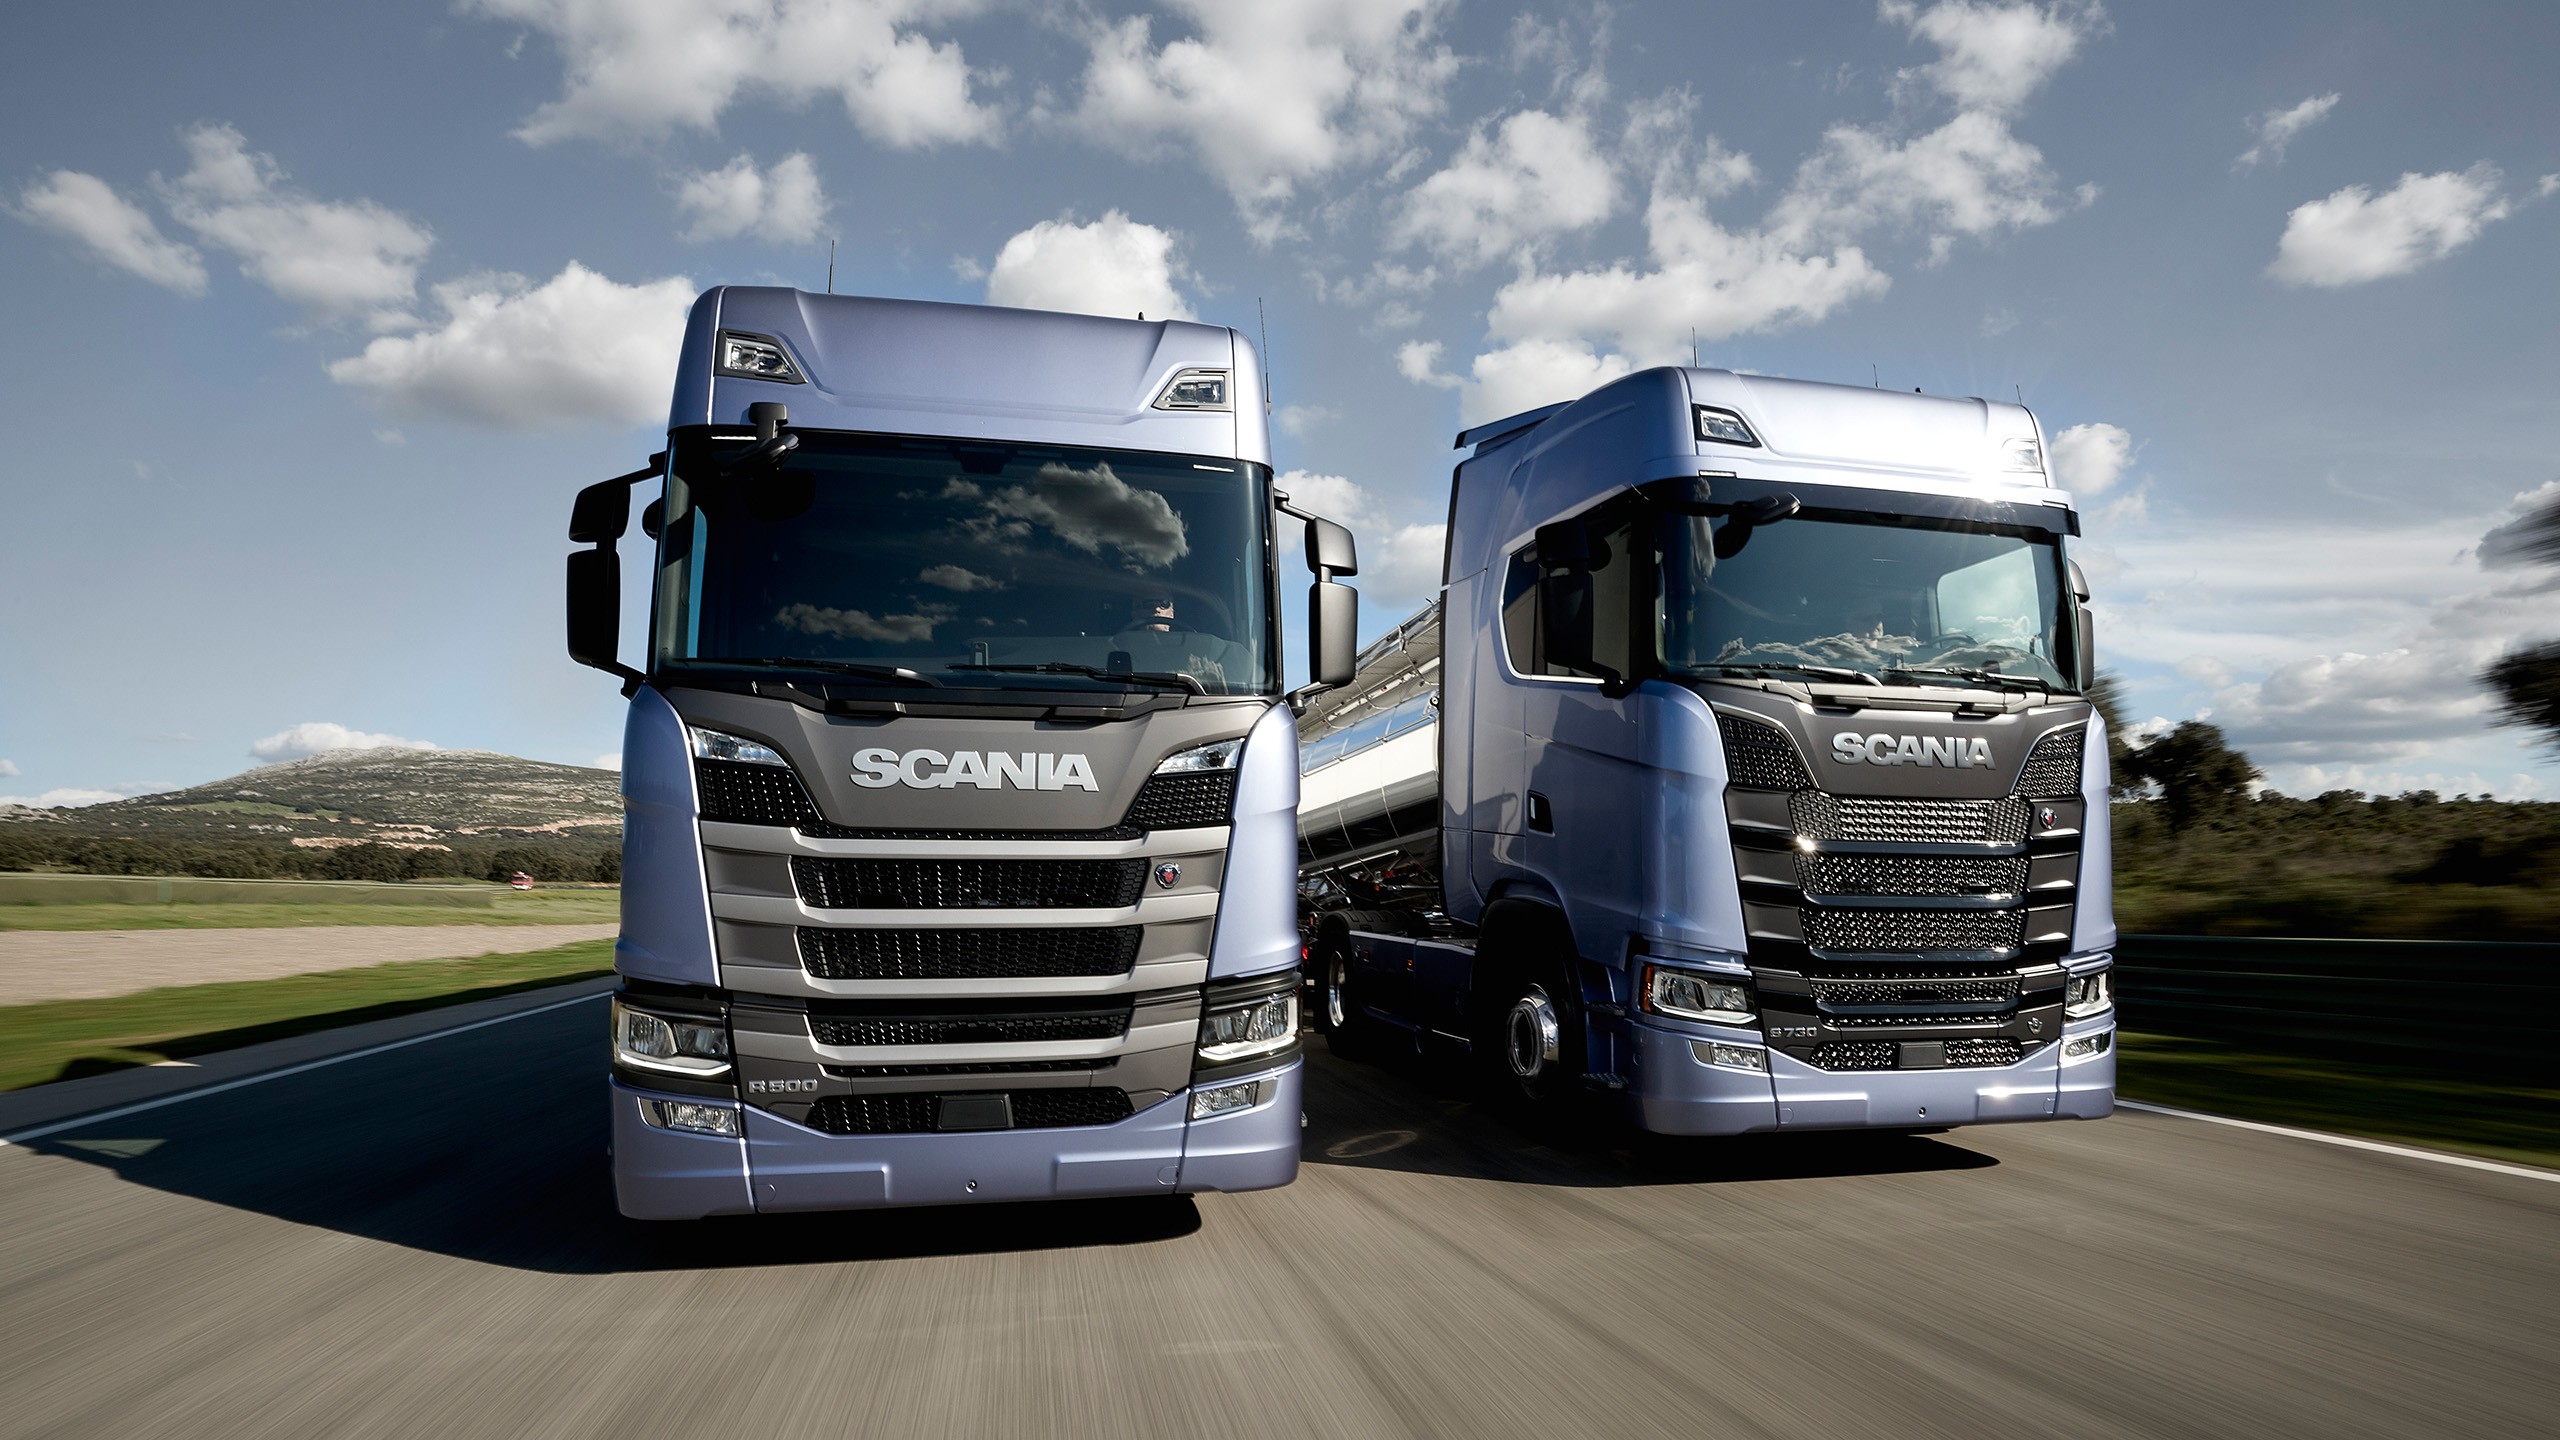 The all new Scania V8 Range